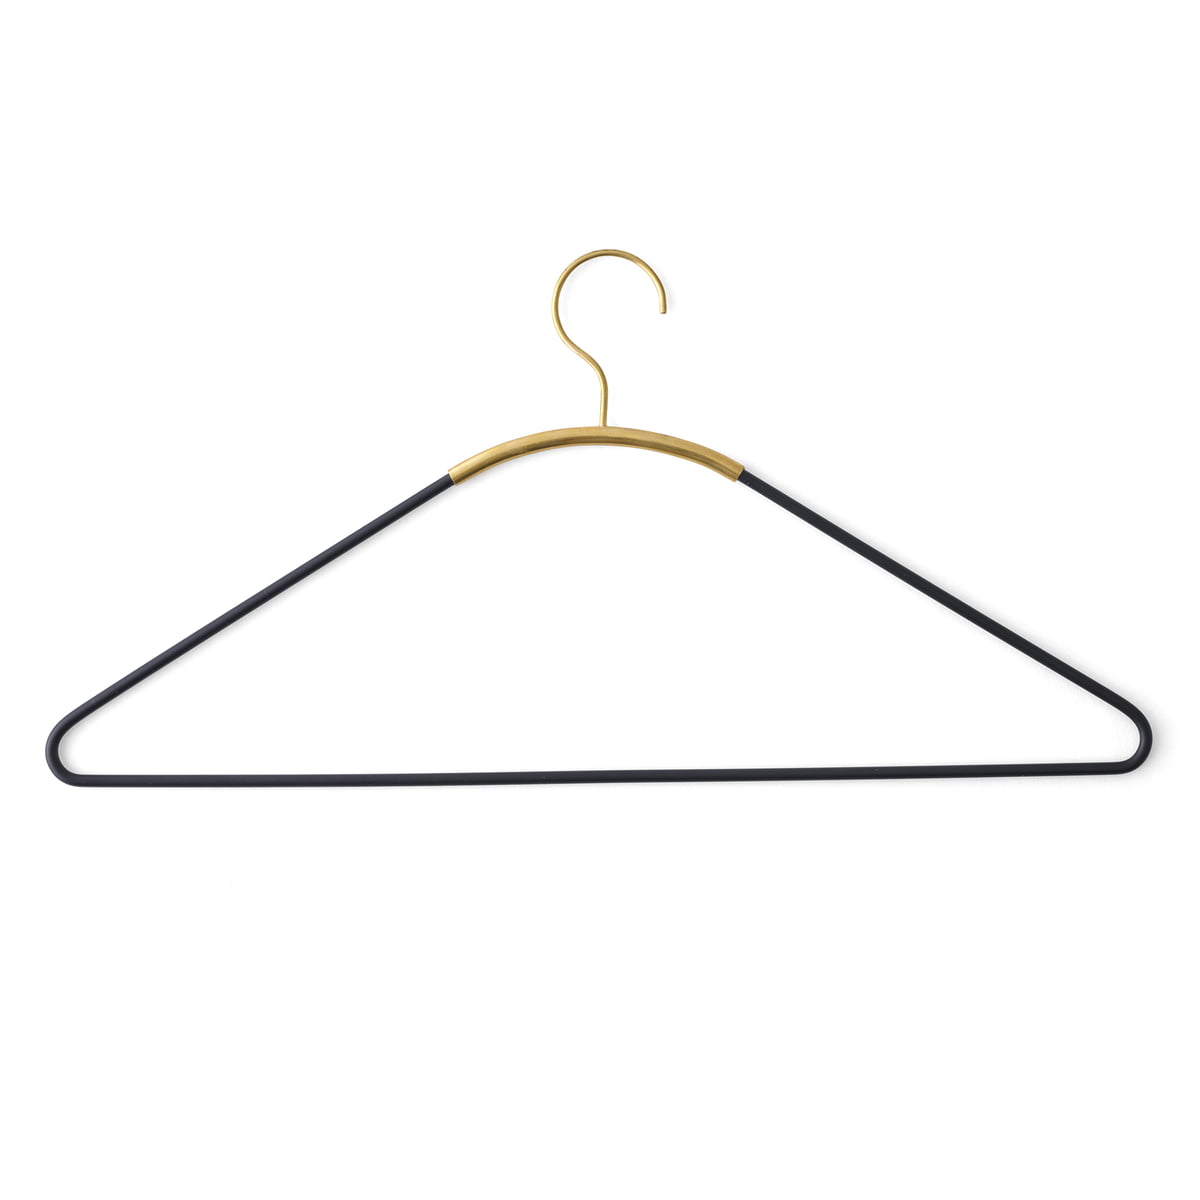 brass coat hangers